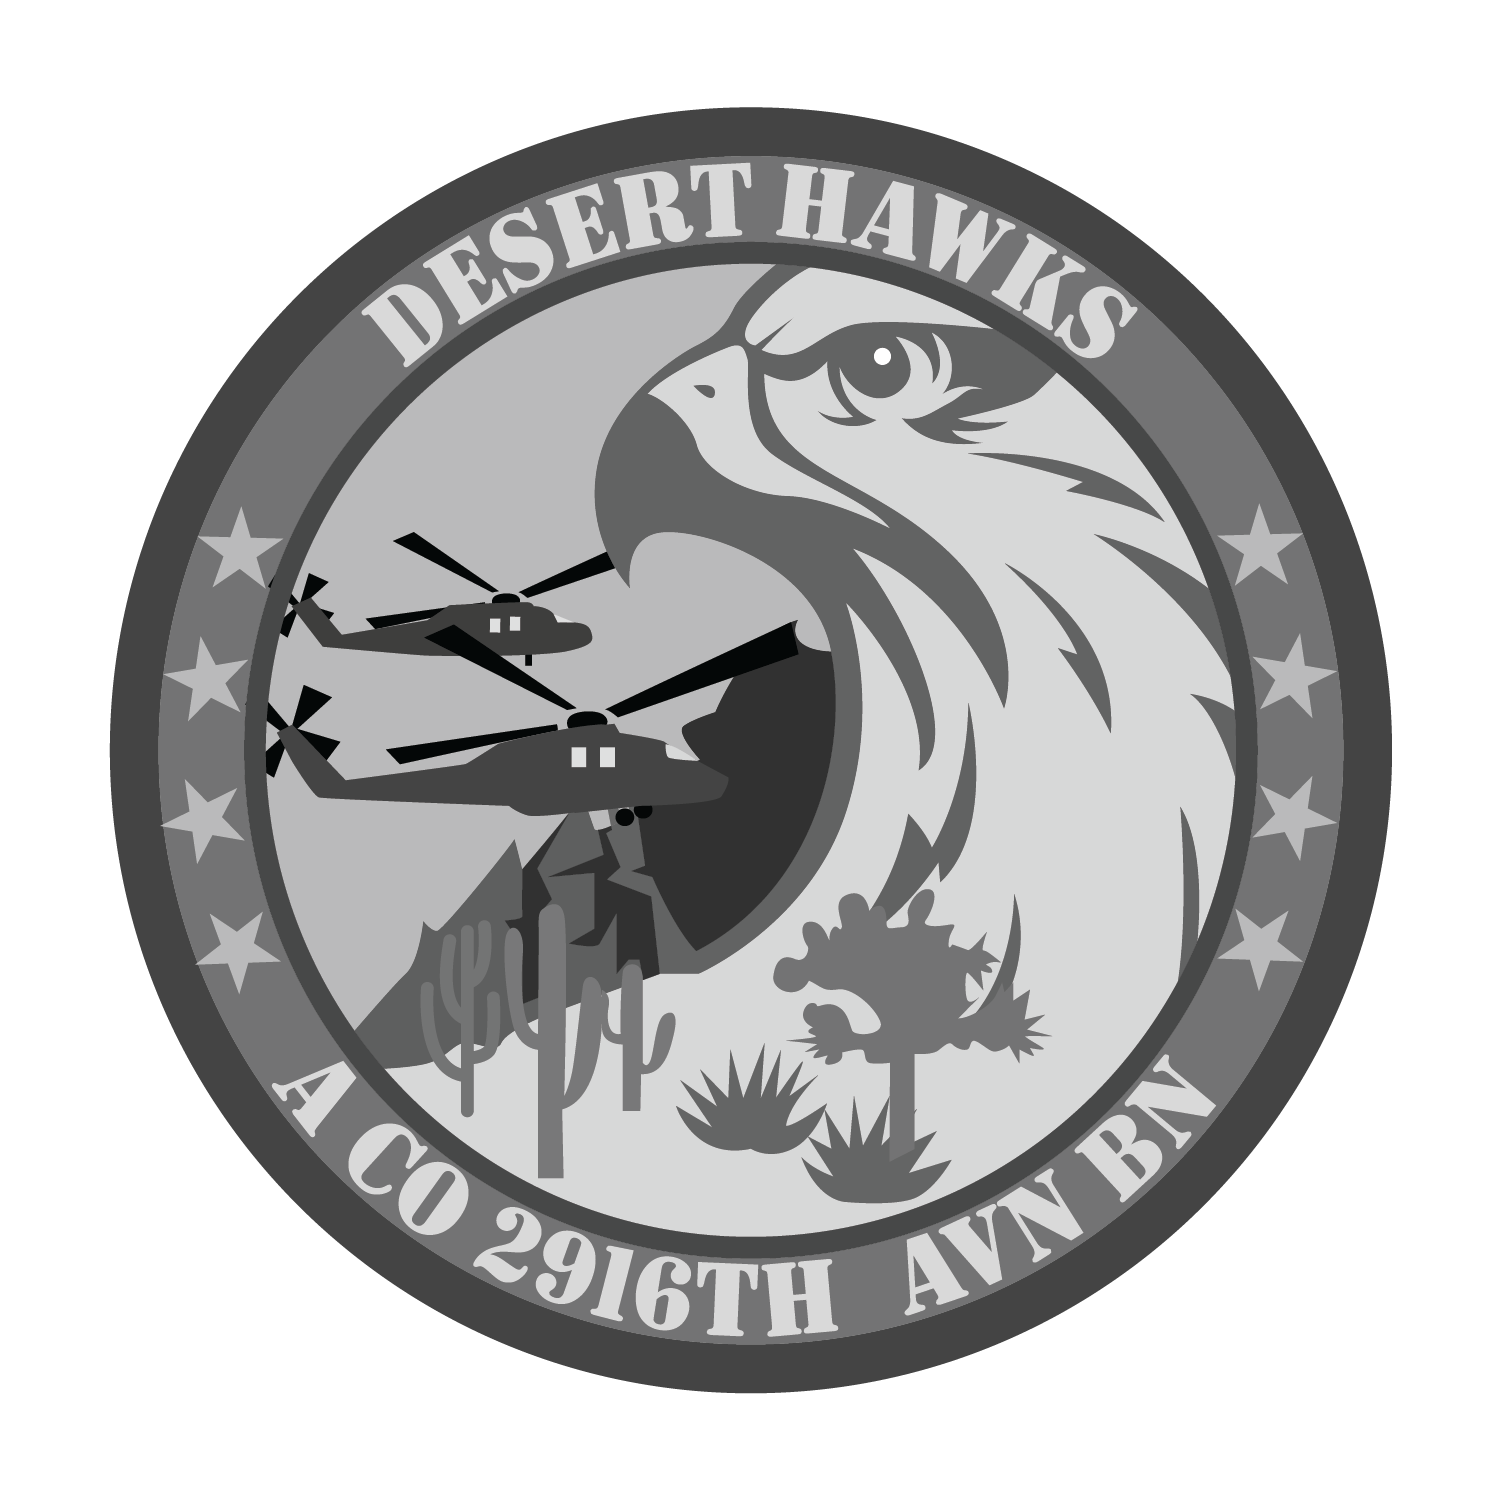 A Co, 2916 AVN "Desert Hawks"